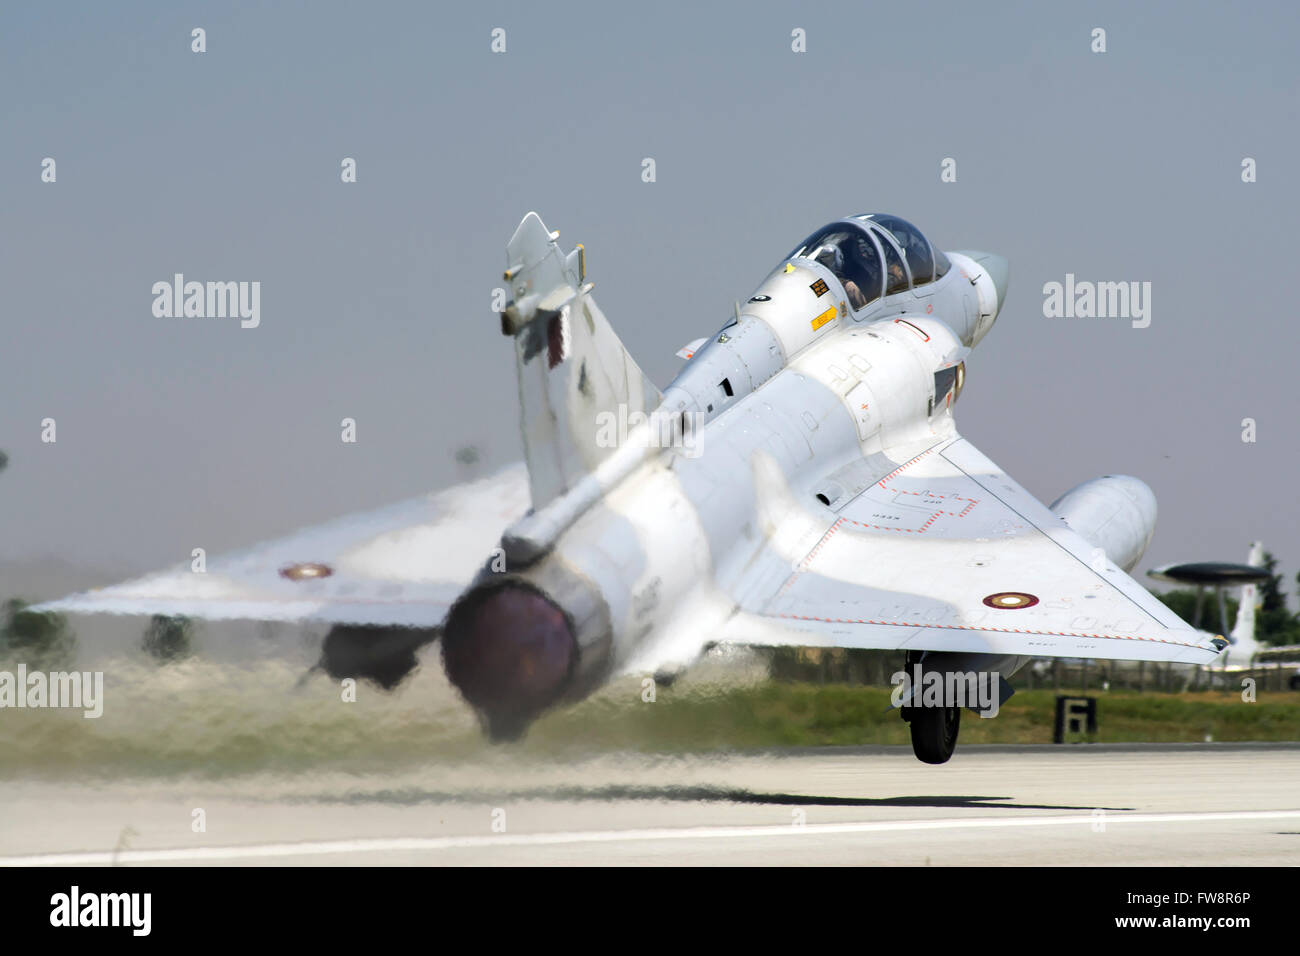 La Qatar Emiri Air Force Mirage 2000-5EDA/5DDA frequentando l'esercizio internazionale anatolica Eagle 2014-2 a Konya, Turchia. Foto Stock